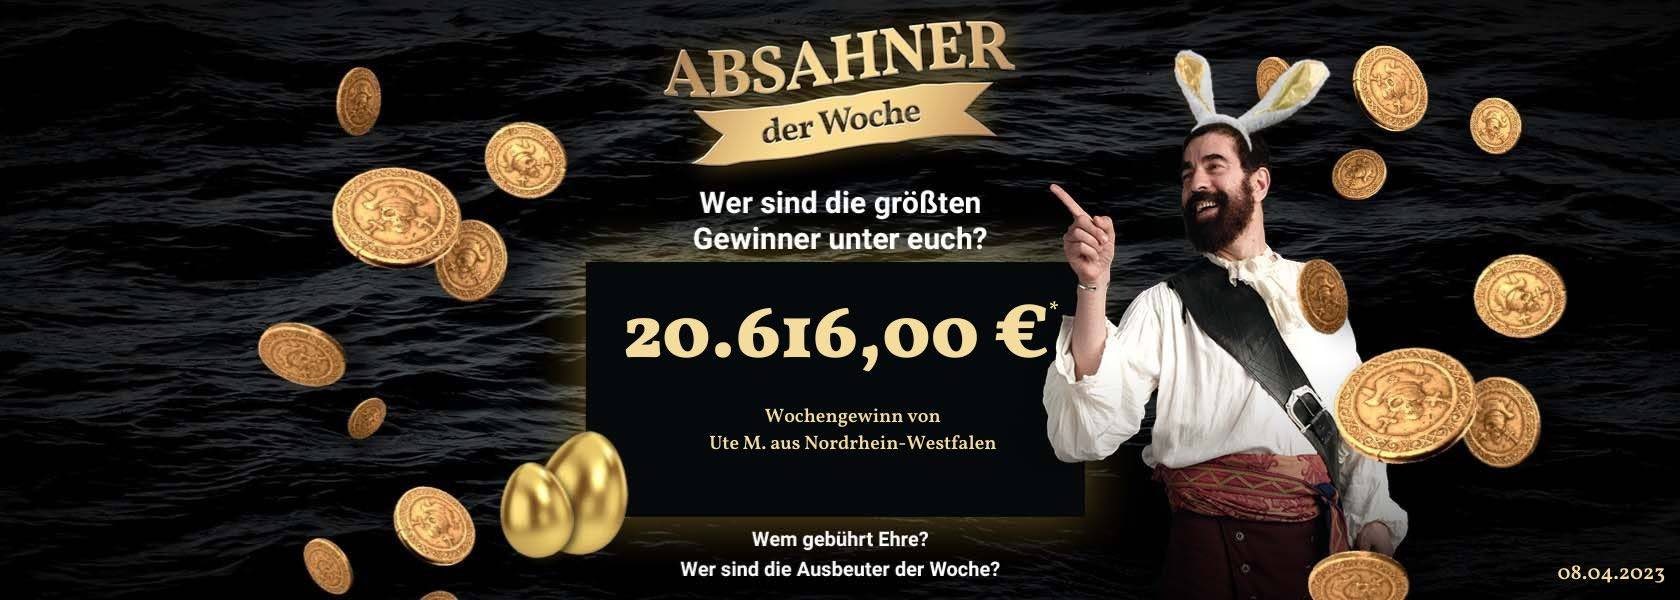 absahner-der-woche-08042023-jpi-1680x600